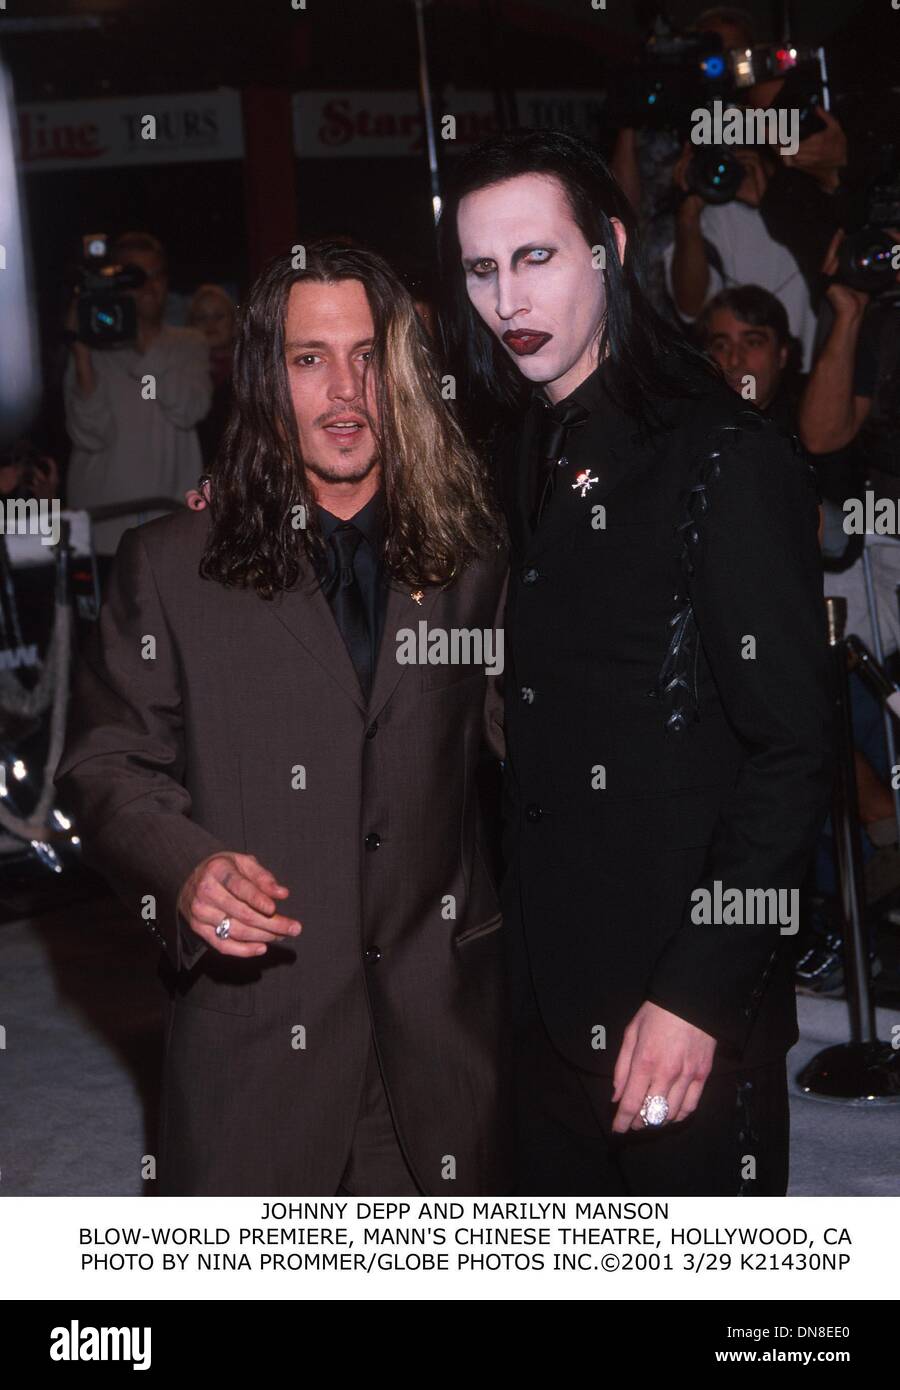 Mar 29, 2001 - Johnny Depp e Marilyn Manson.blow-Premiere mondiale, il Teatro Cinese di Mann, Hollywood, CA. NINA PROMMER/ 2001 3/29 K21430NP(Immagine di credito: © Globo foto/ZUMAPRESS.com) Foto Stock